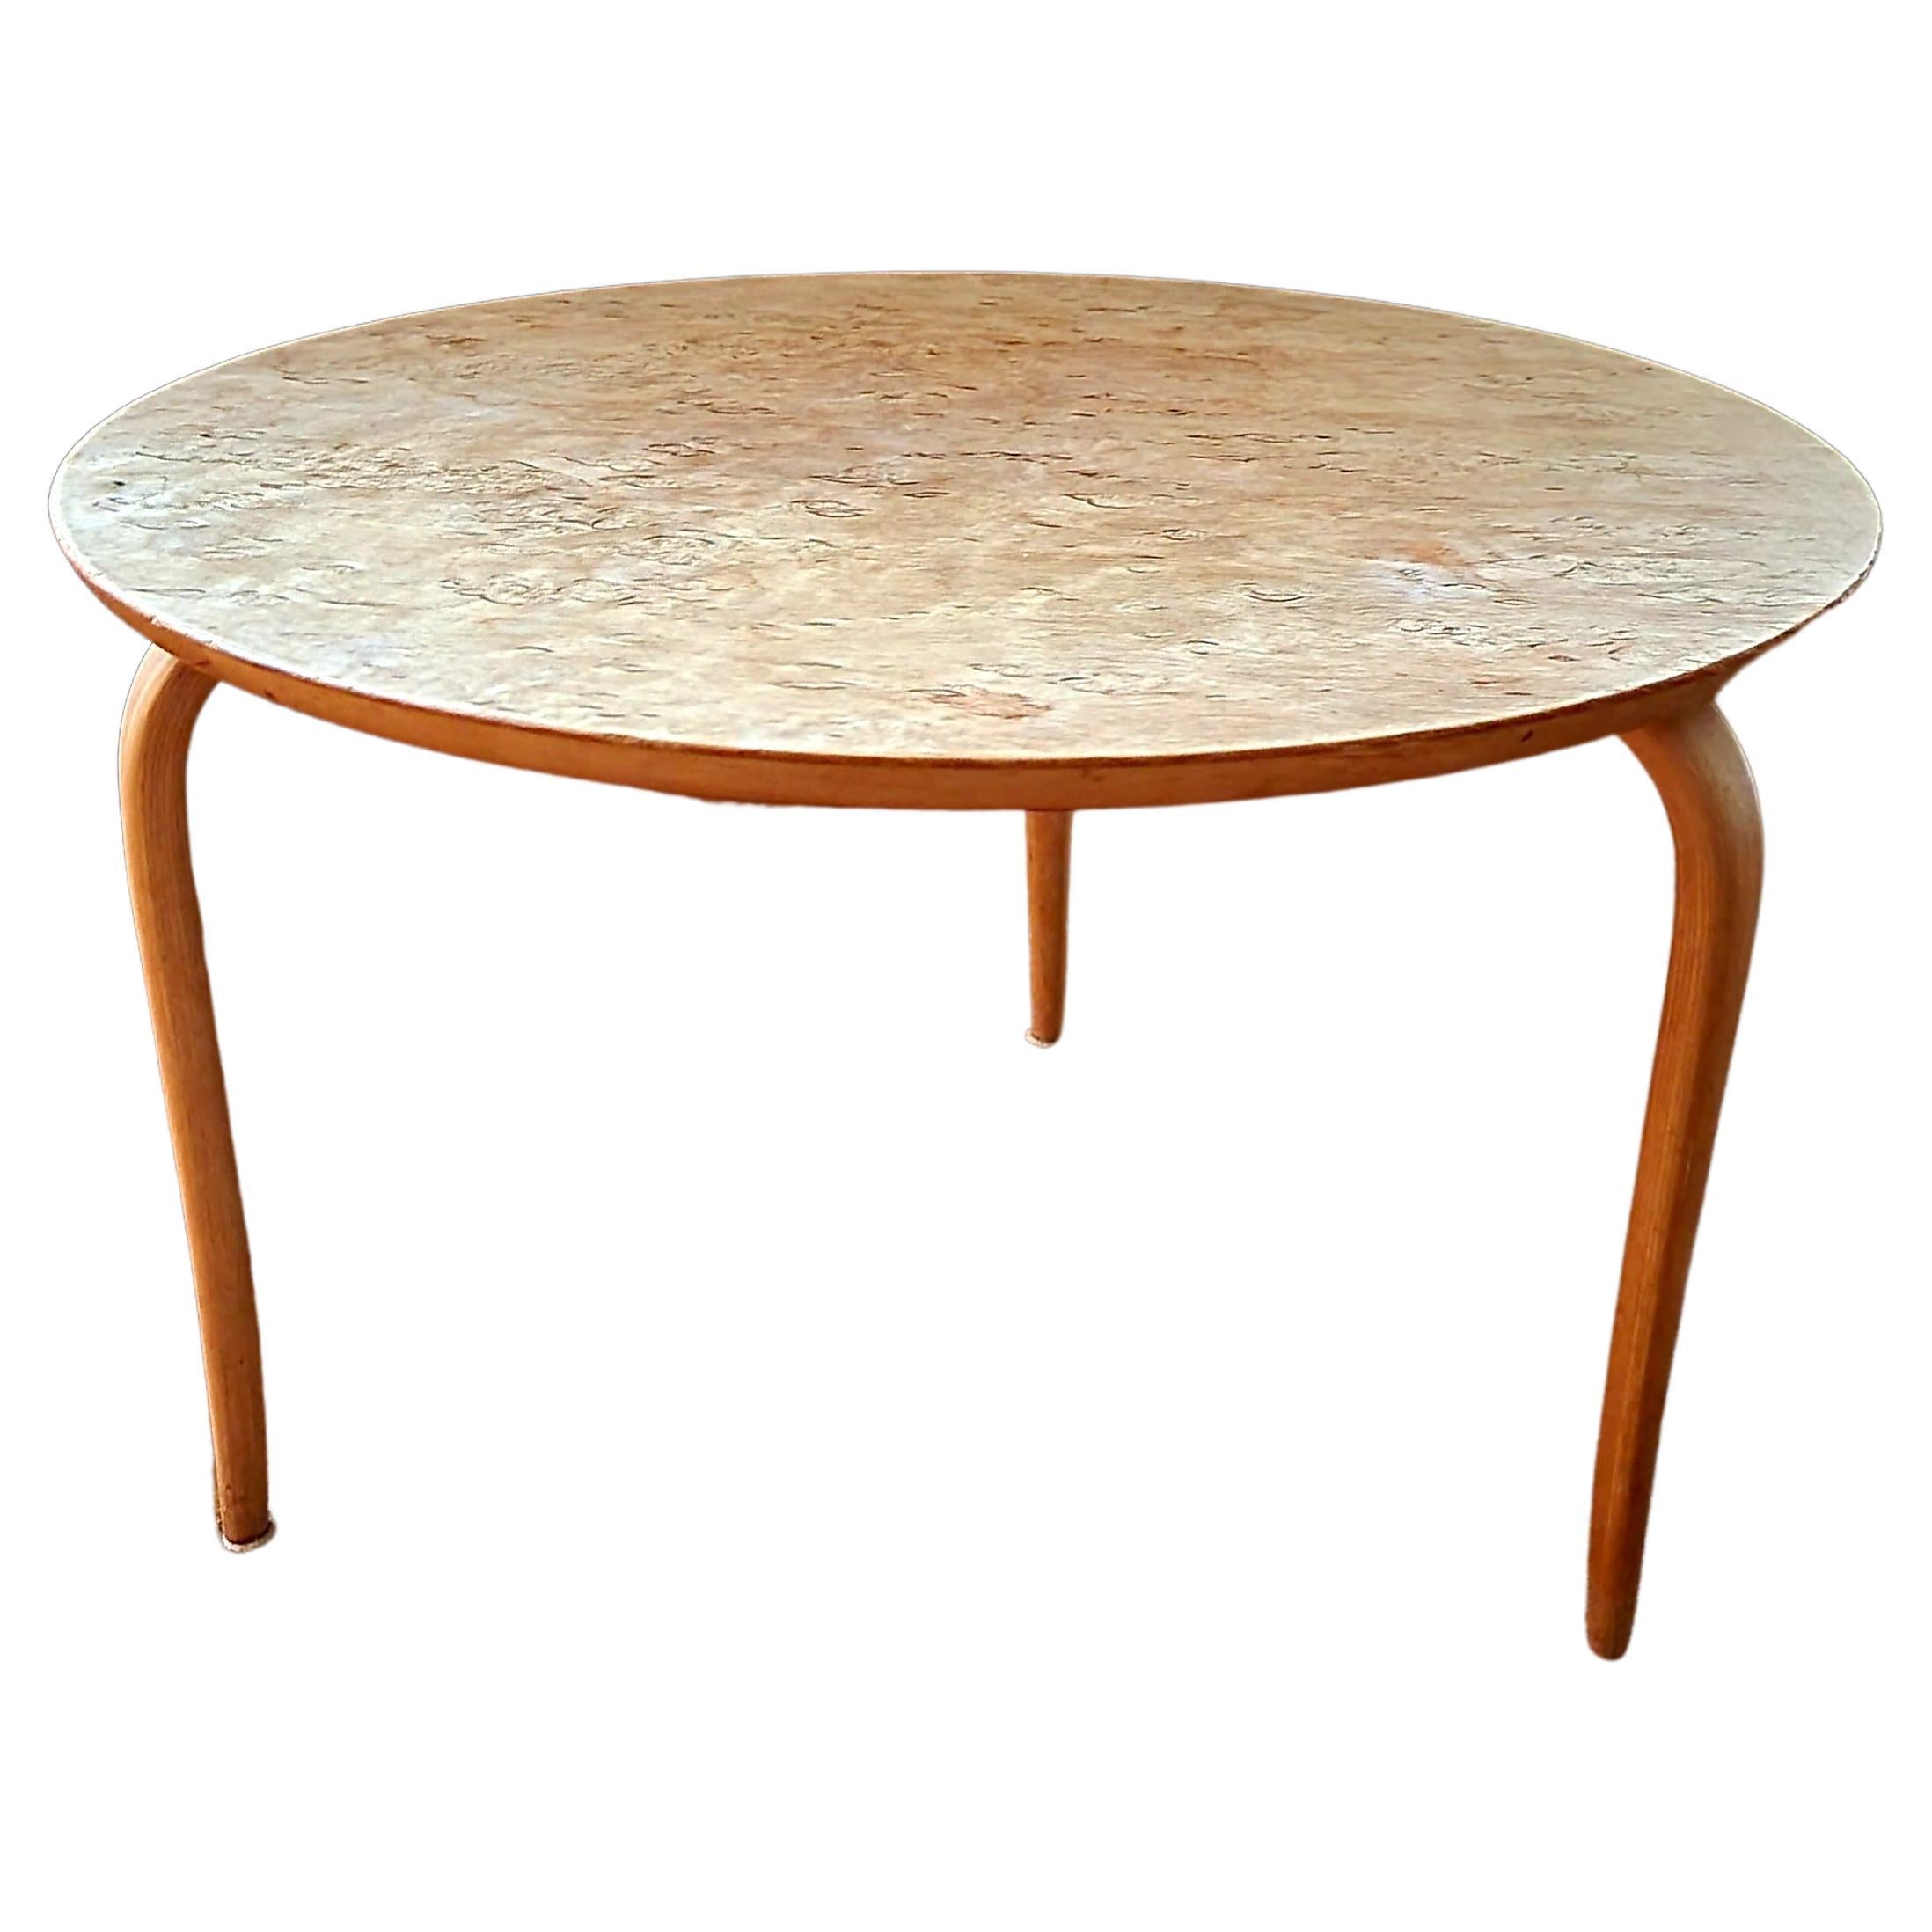 Table d'appoint « Annika » de Bruno Mathsson, en bouleau, style scandinave moderne, datée de 1974